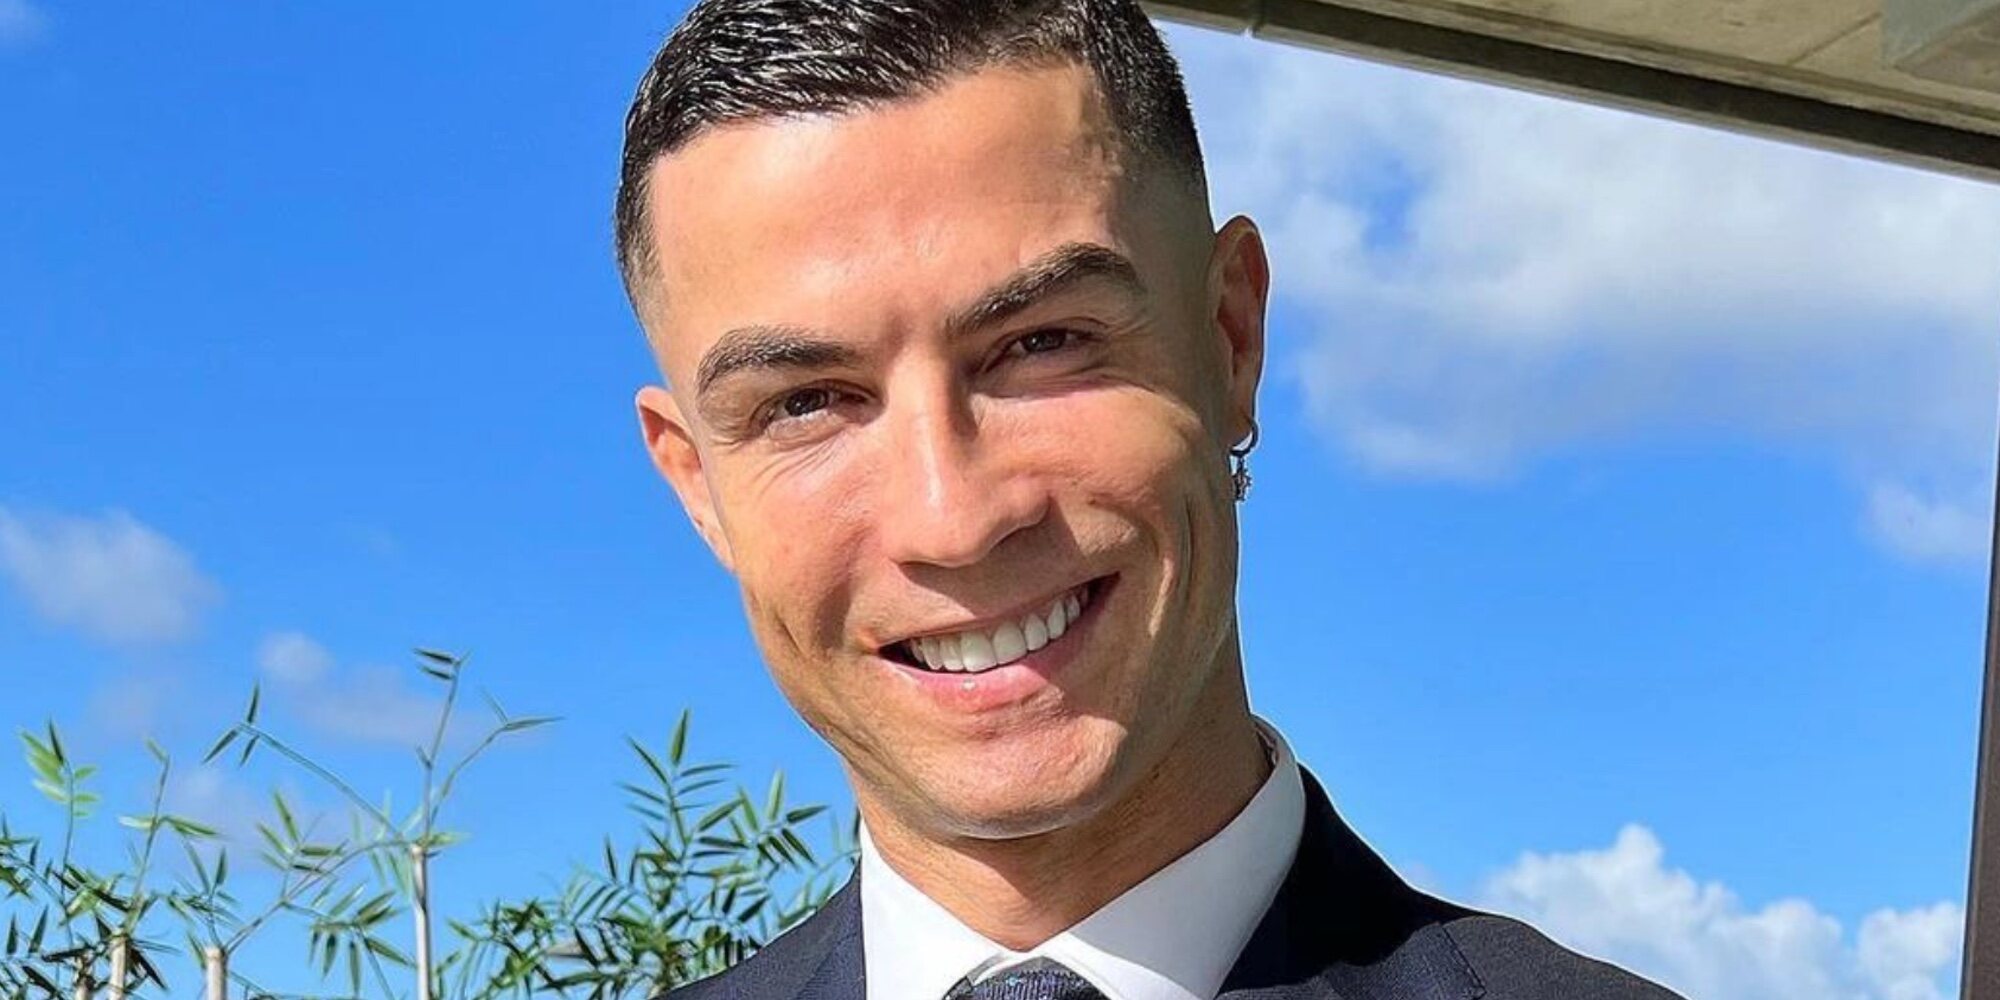 El récord agridulce de Cristiano Ronaldo: el más seguido de Instagram mientras se queda sin equipo